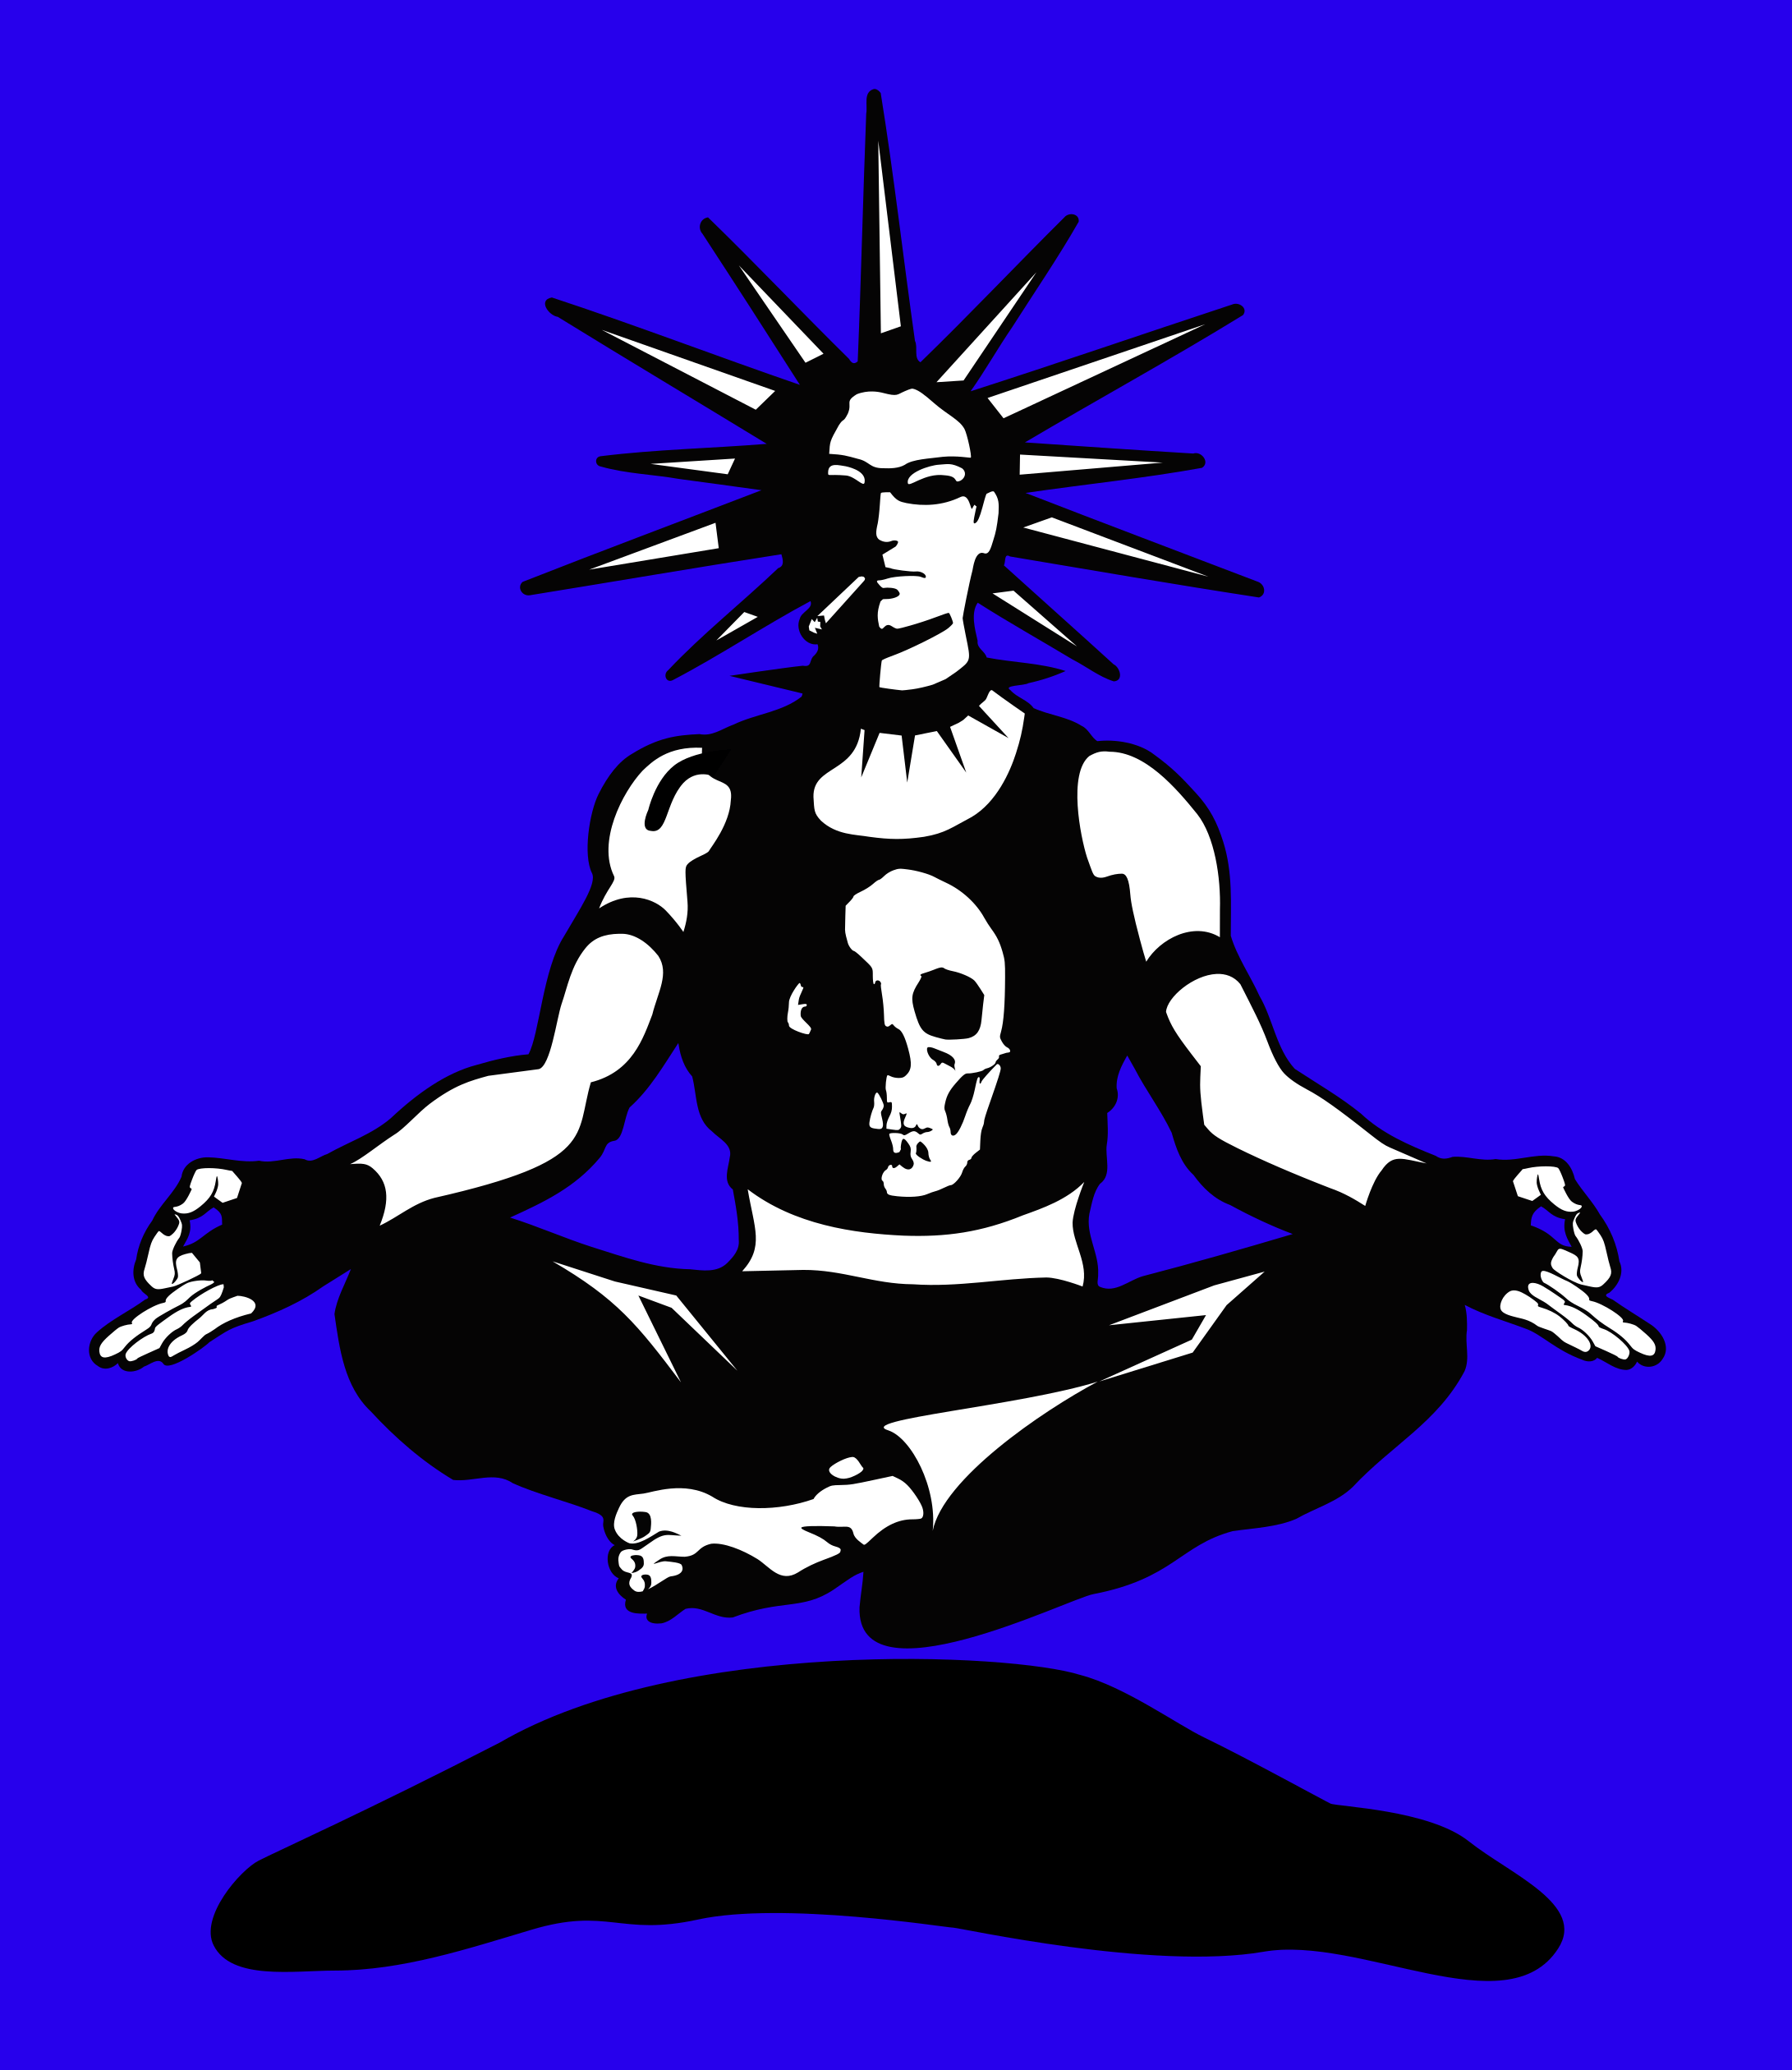 A levitating meditating punk